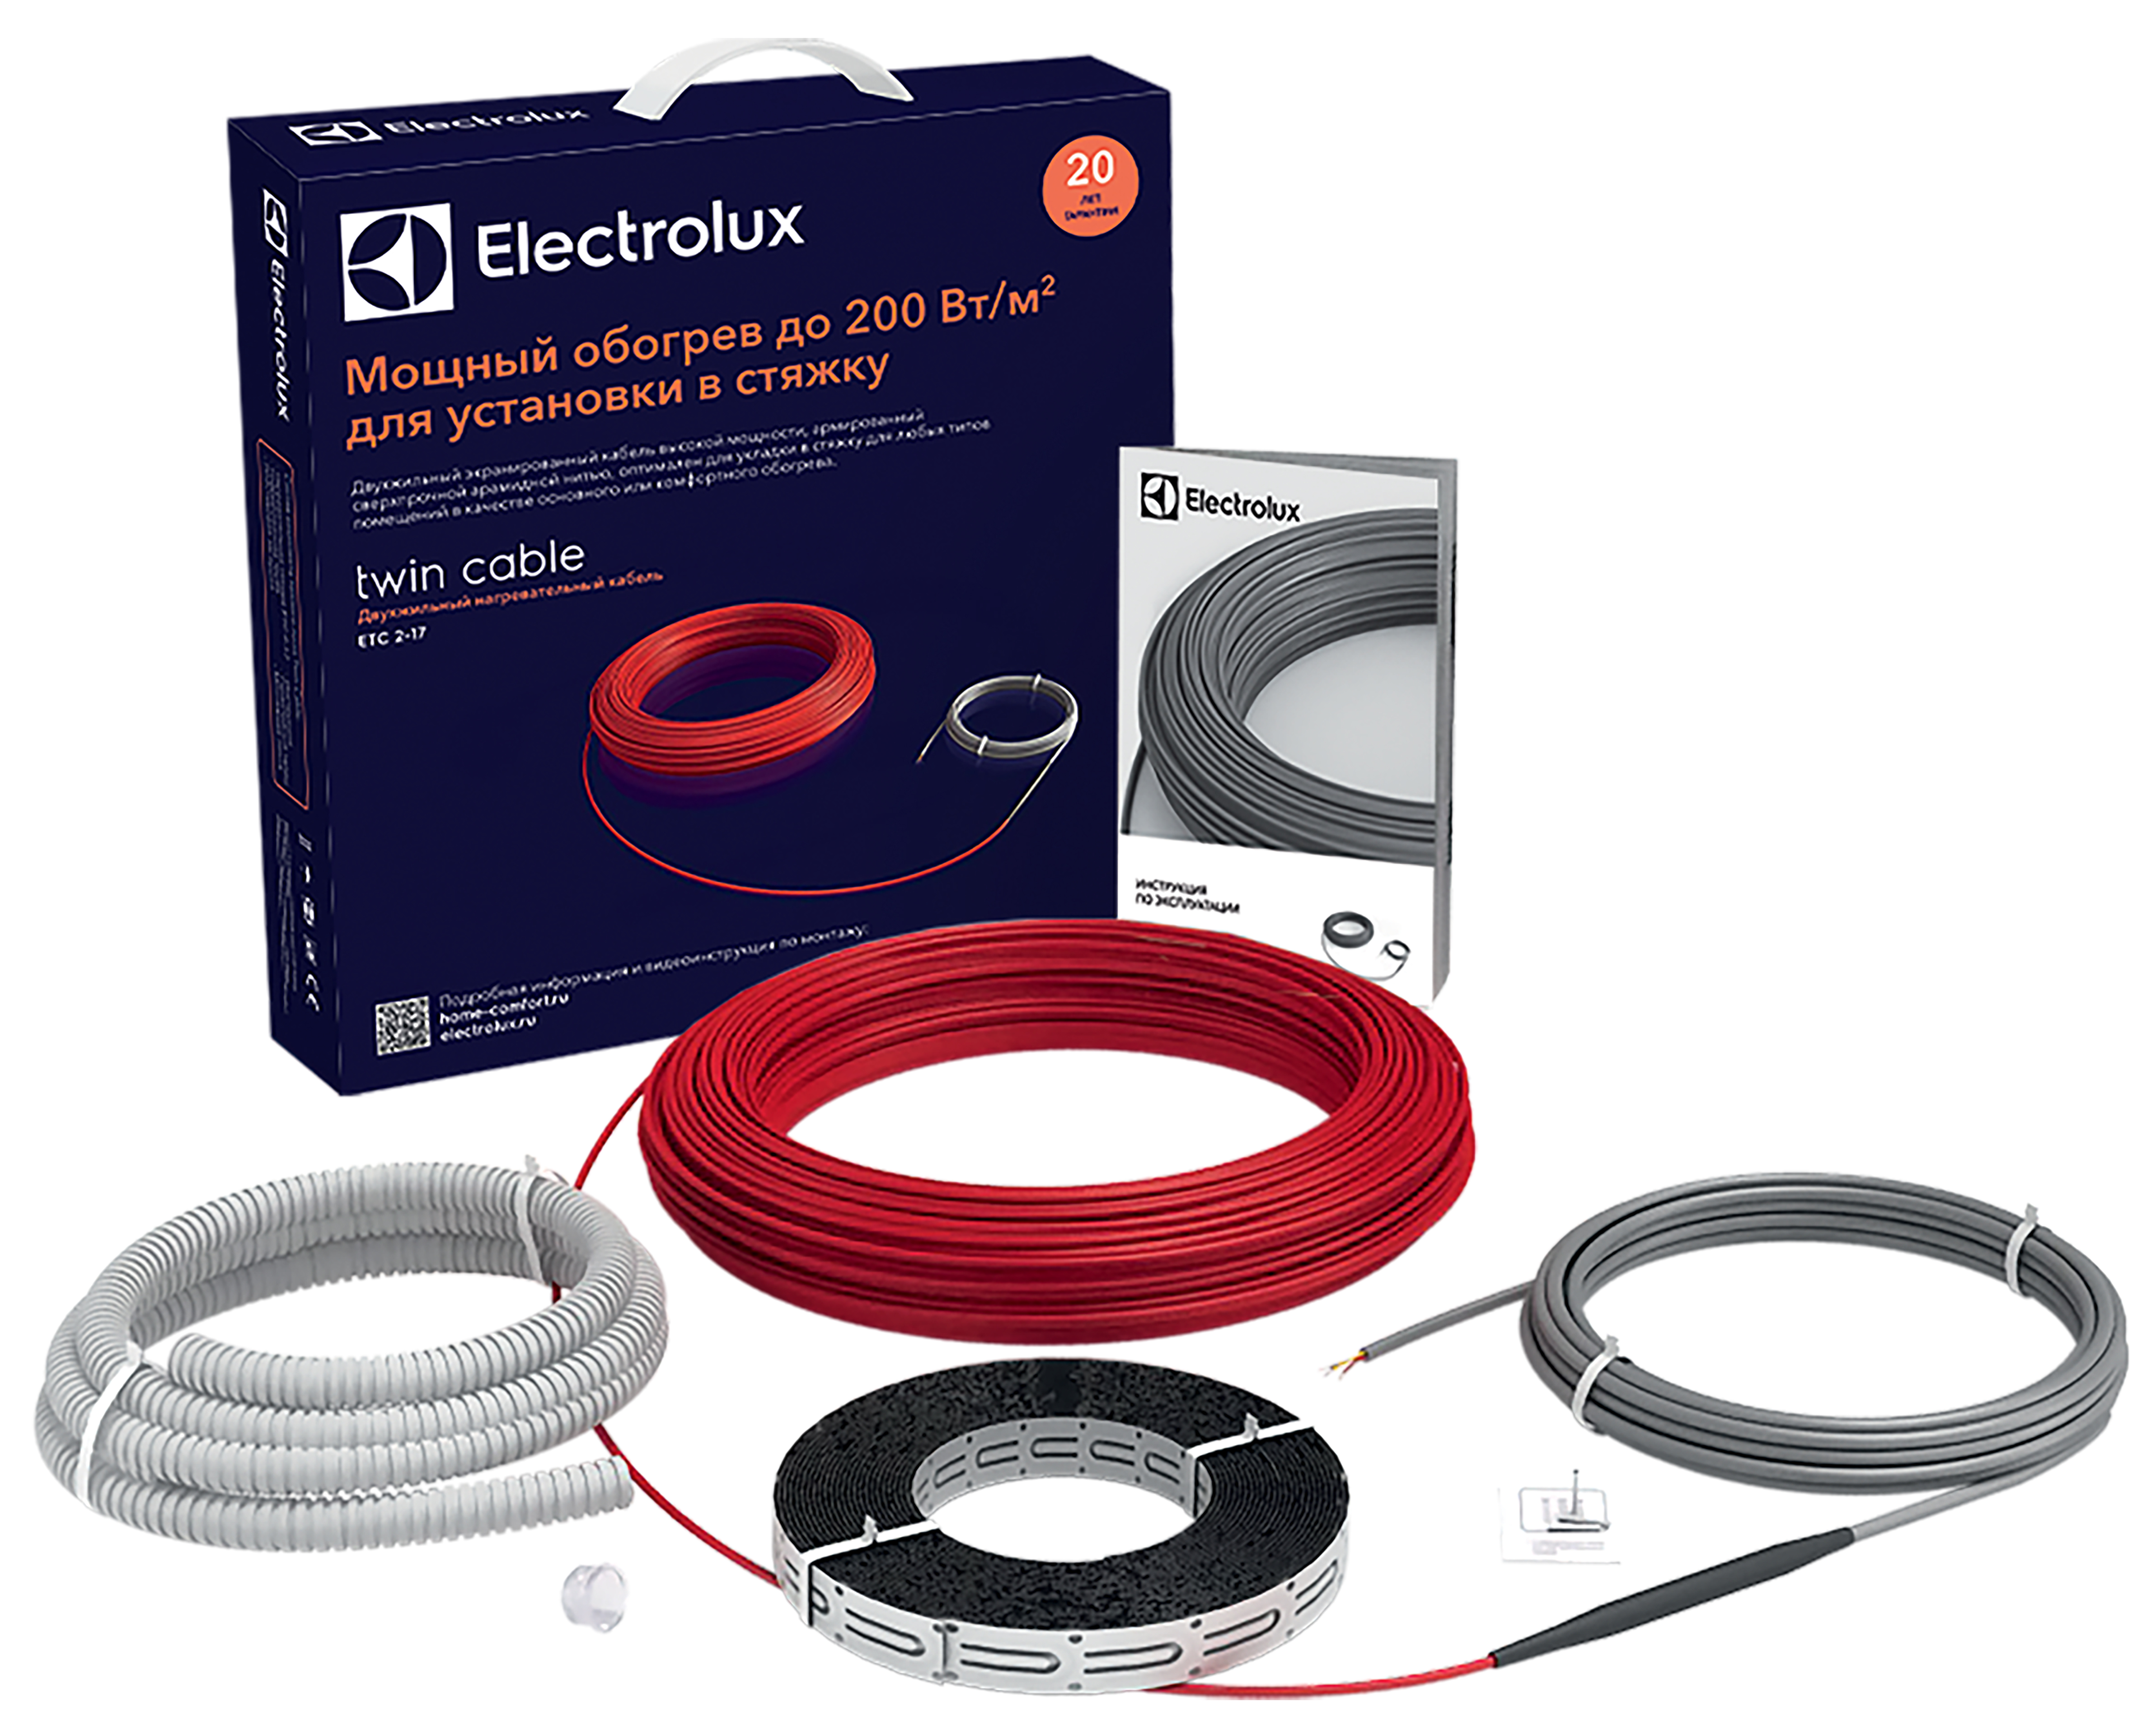 Теплый пол Electrolux под линолеум Electrolux Twin Cable ETC 2-17-2000